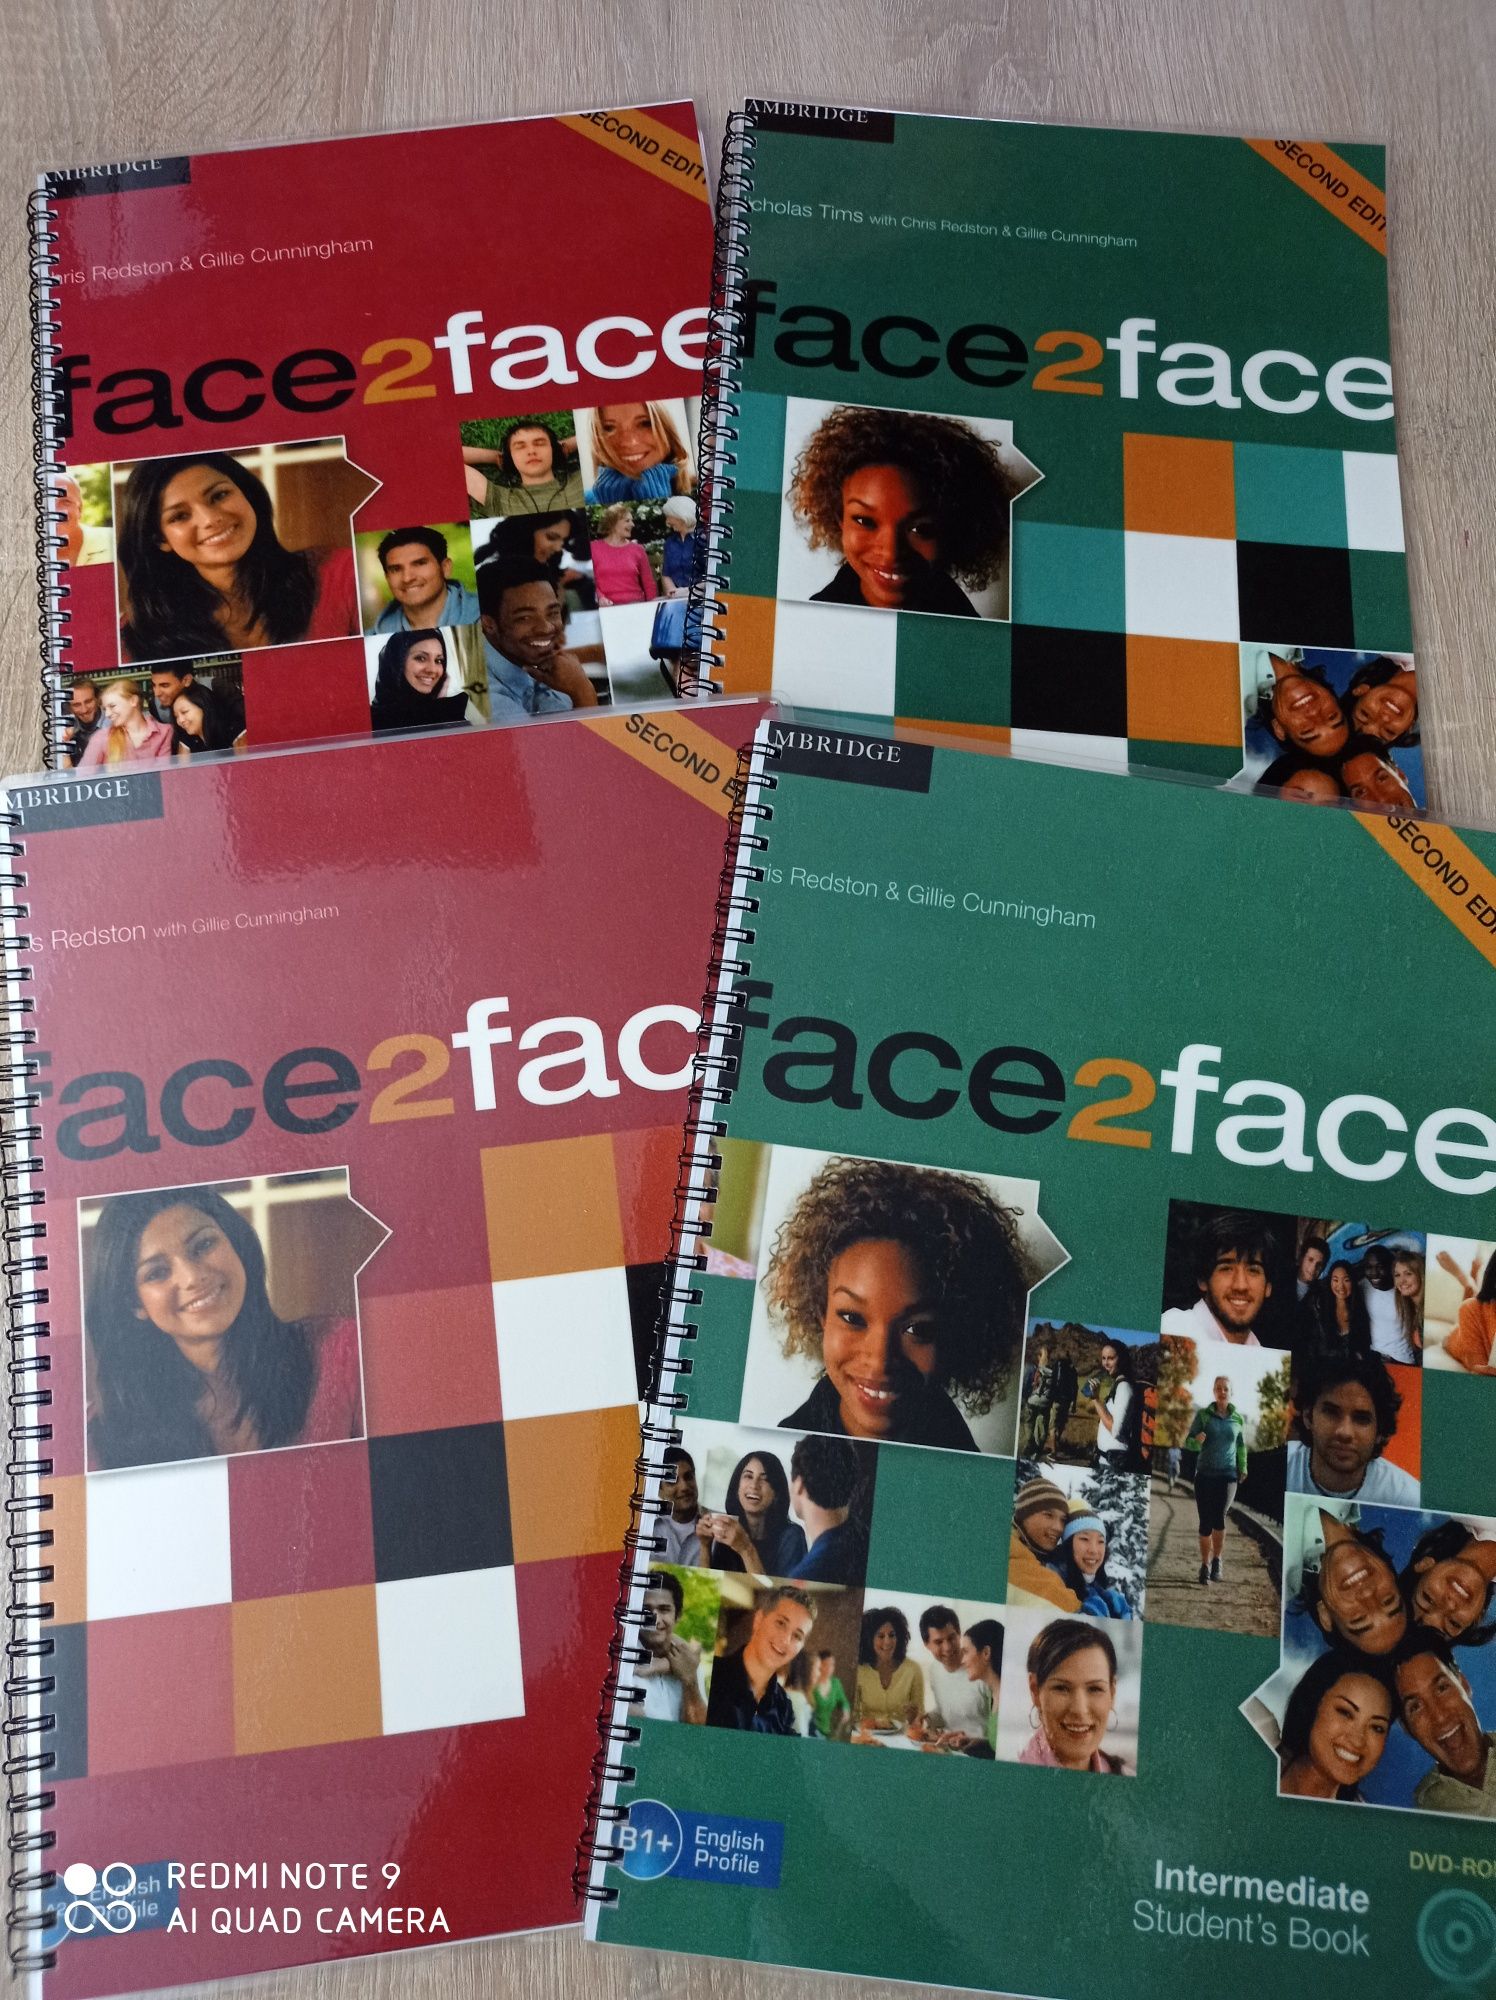 Face2face (face to face)